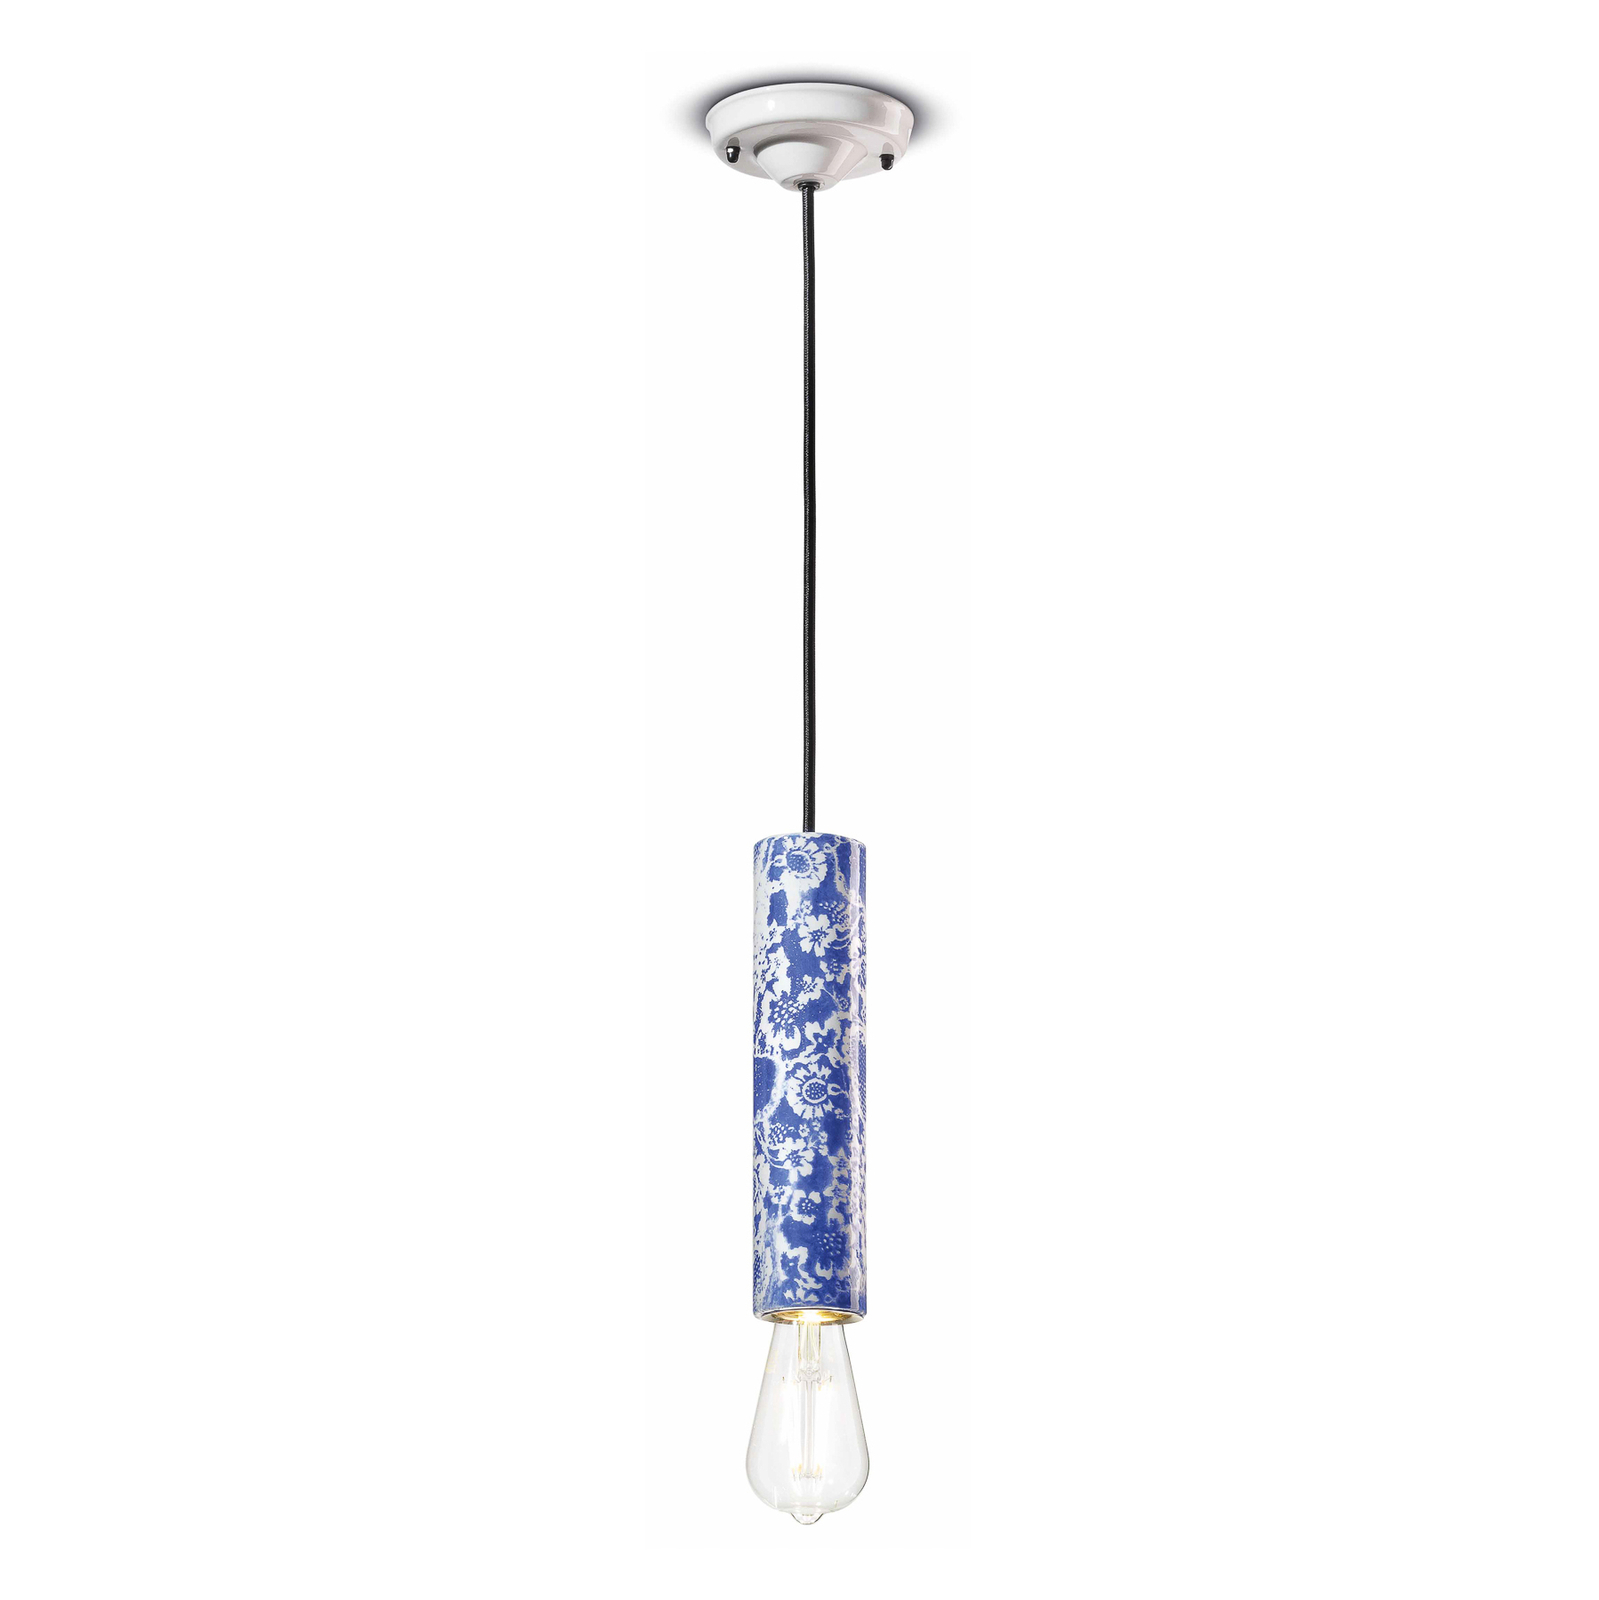 PI viseća lampa s cvjetnim uzorkom, Ø 5,5 cm plavo/bijela